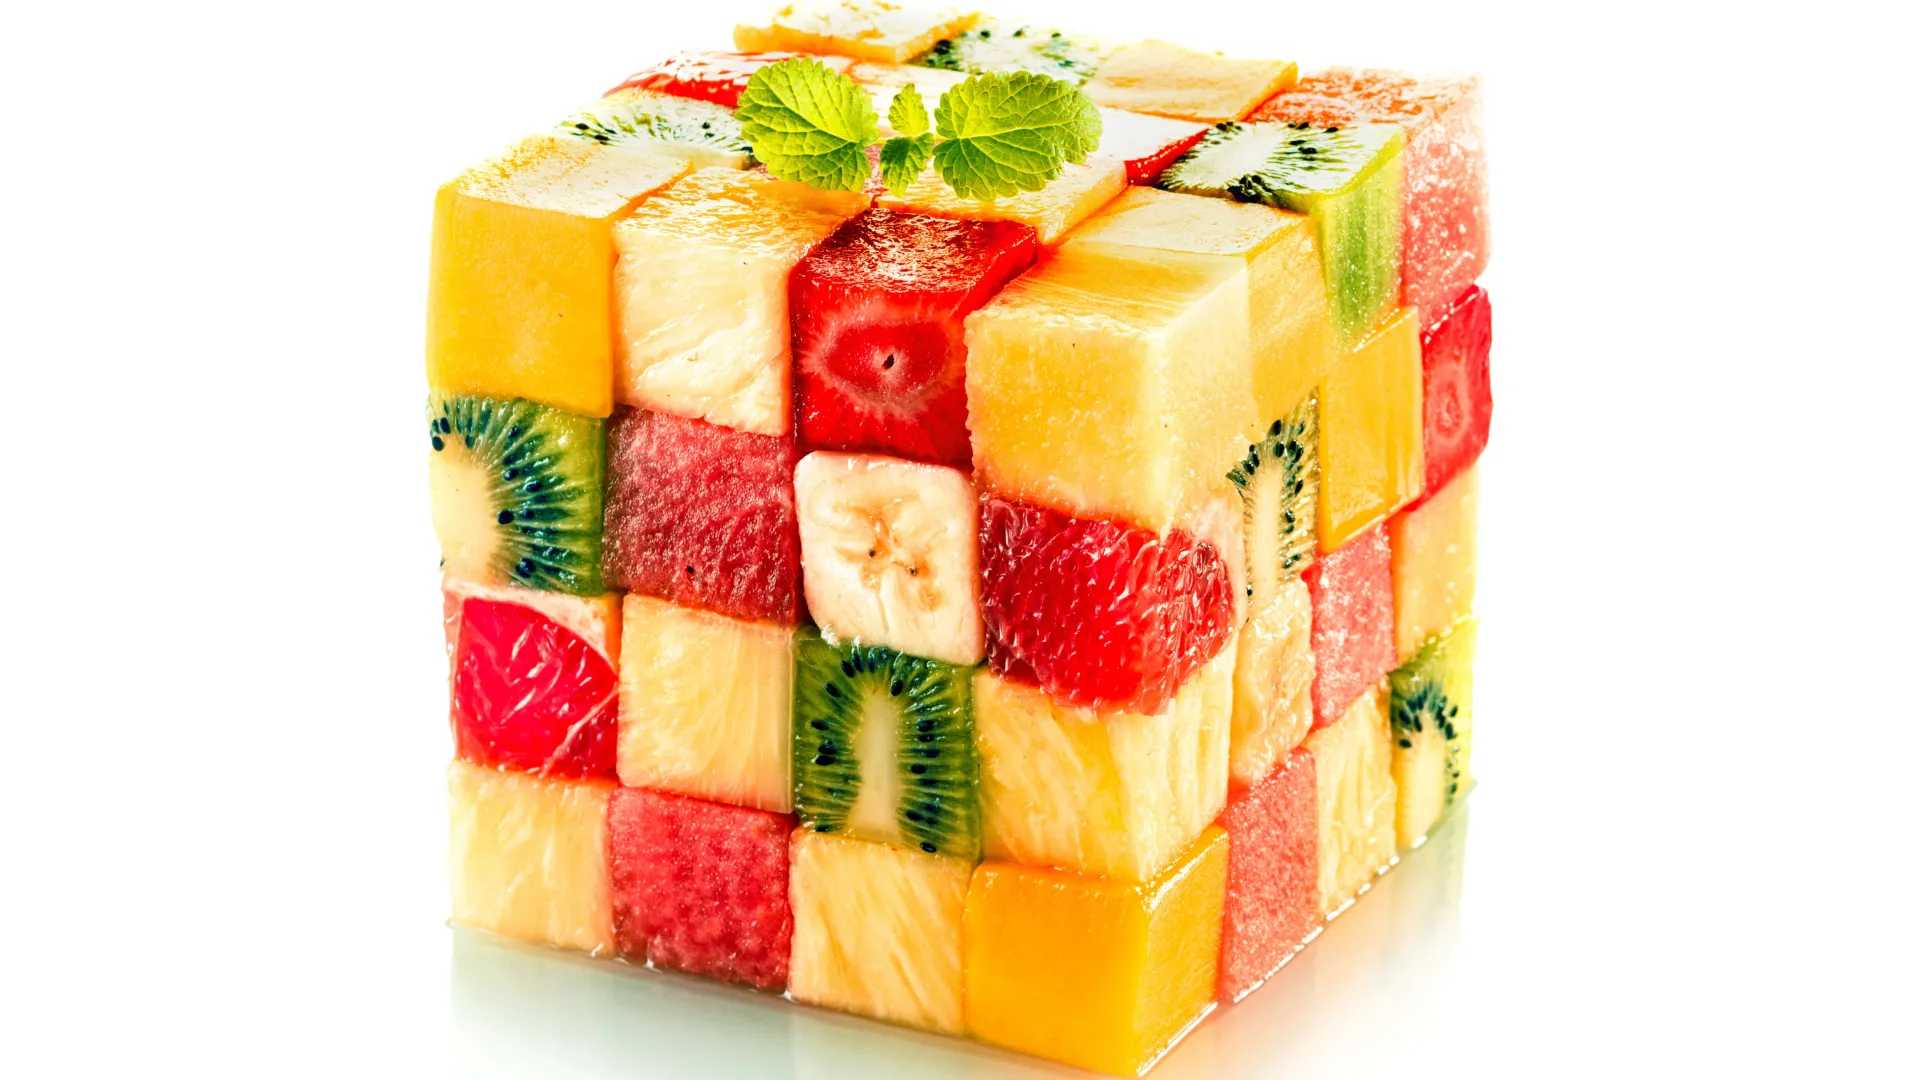 水果 猕猴桃 水果 食品 菠萝 草莓 魔方 块 简单背景 白色背景 创意 